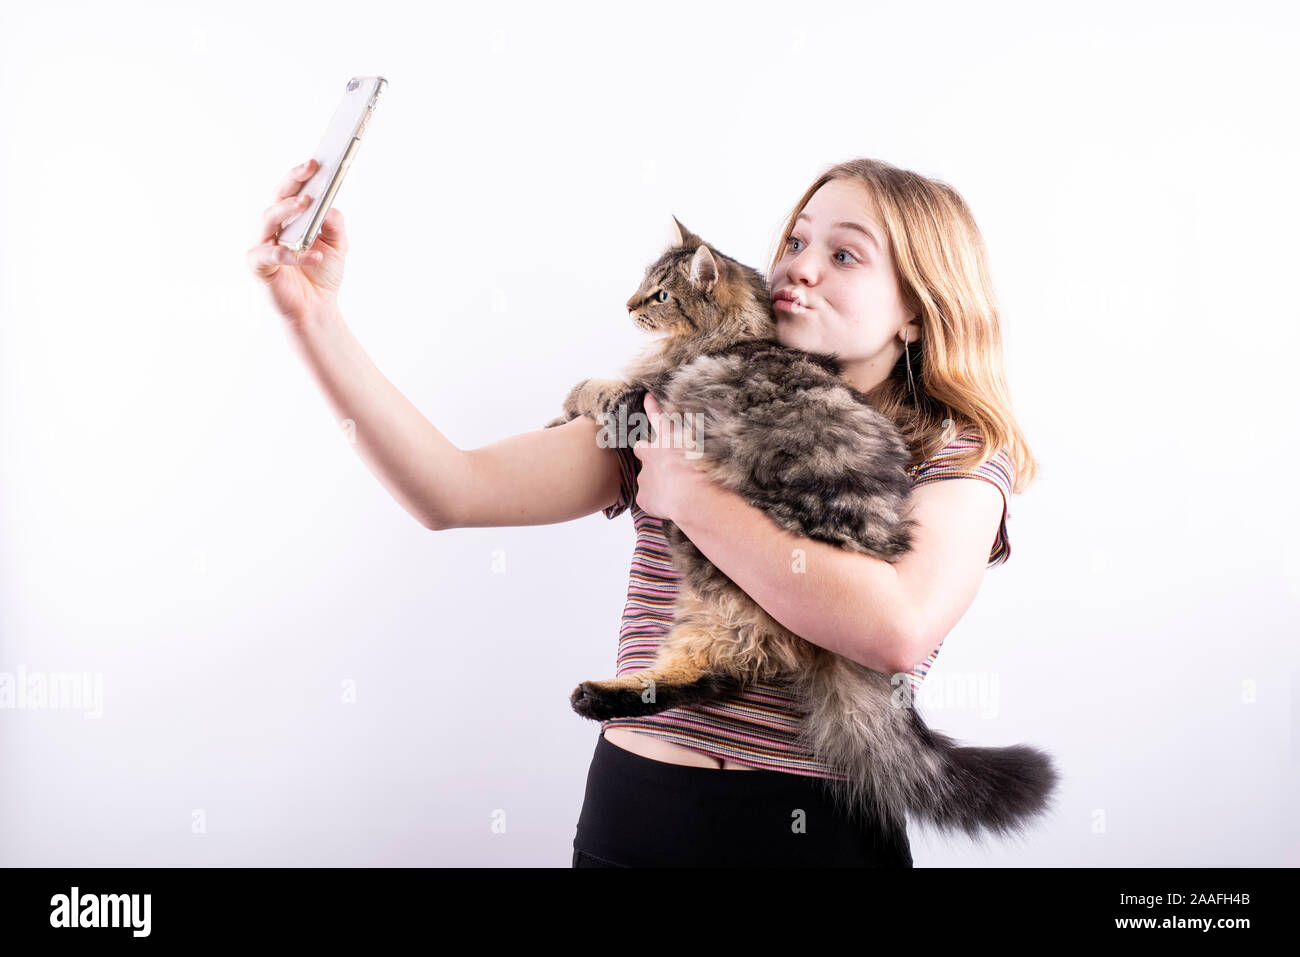 Caucasian ragazza adolescente che indossa un rigato orizzontale T-shirt prendendo un selfie di se stessa e di un soffice gatto con uno smartphone contro uno sfondo bianco Foto Stock